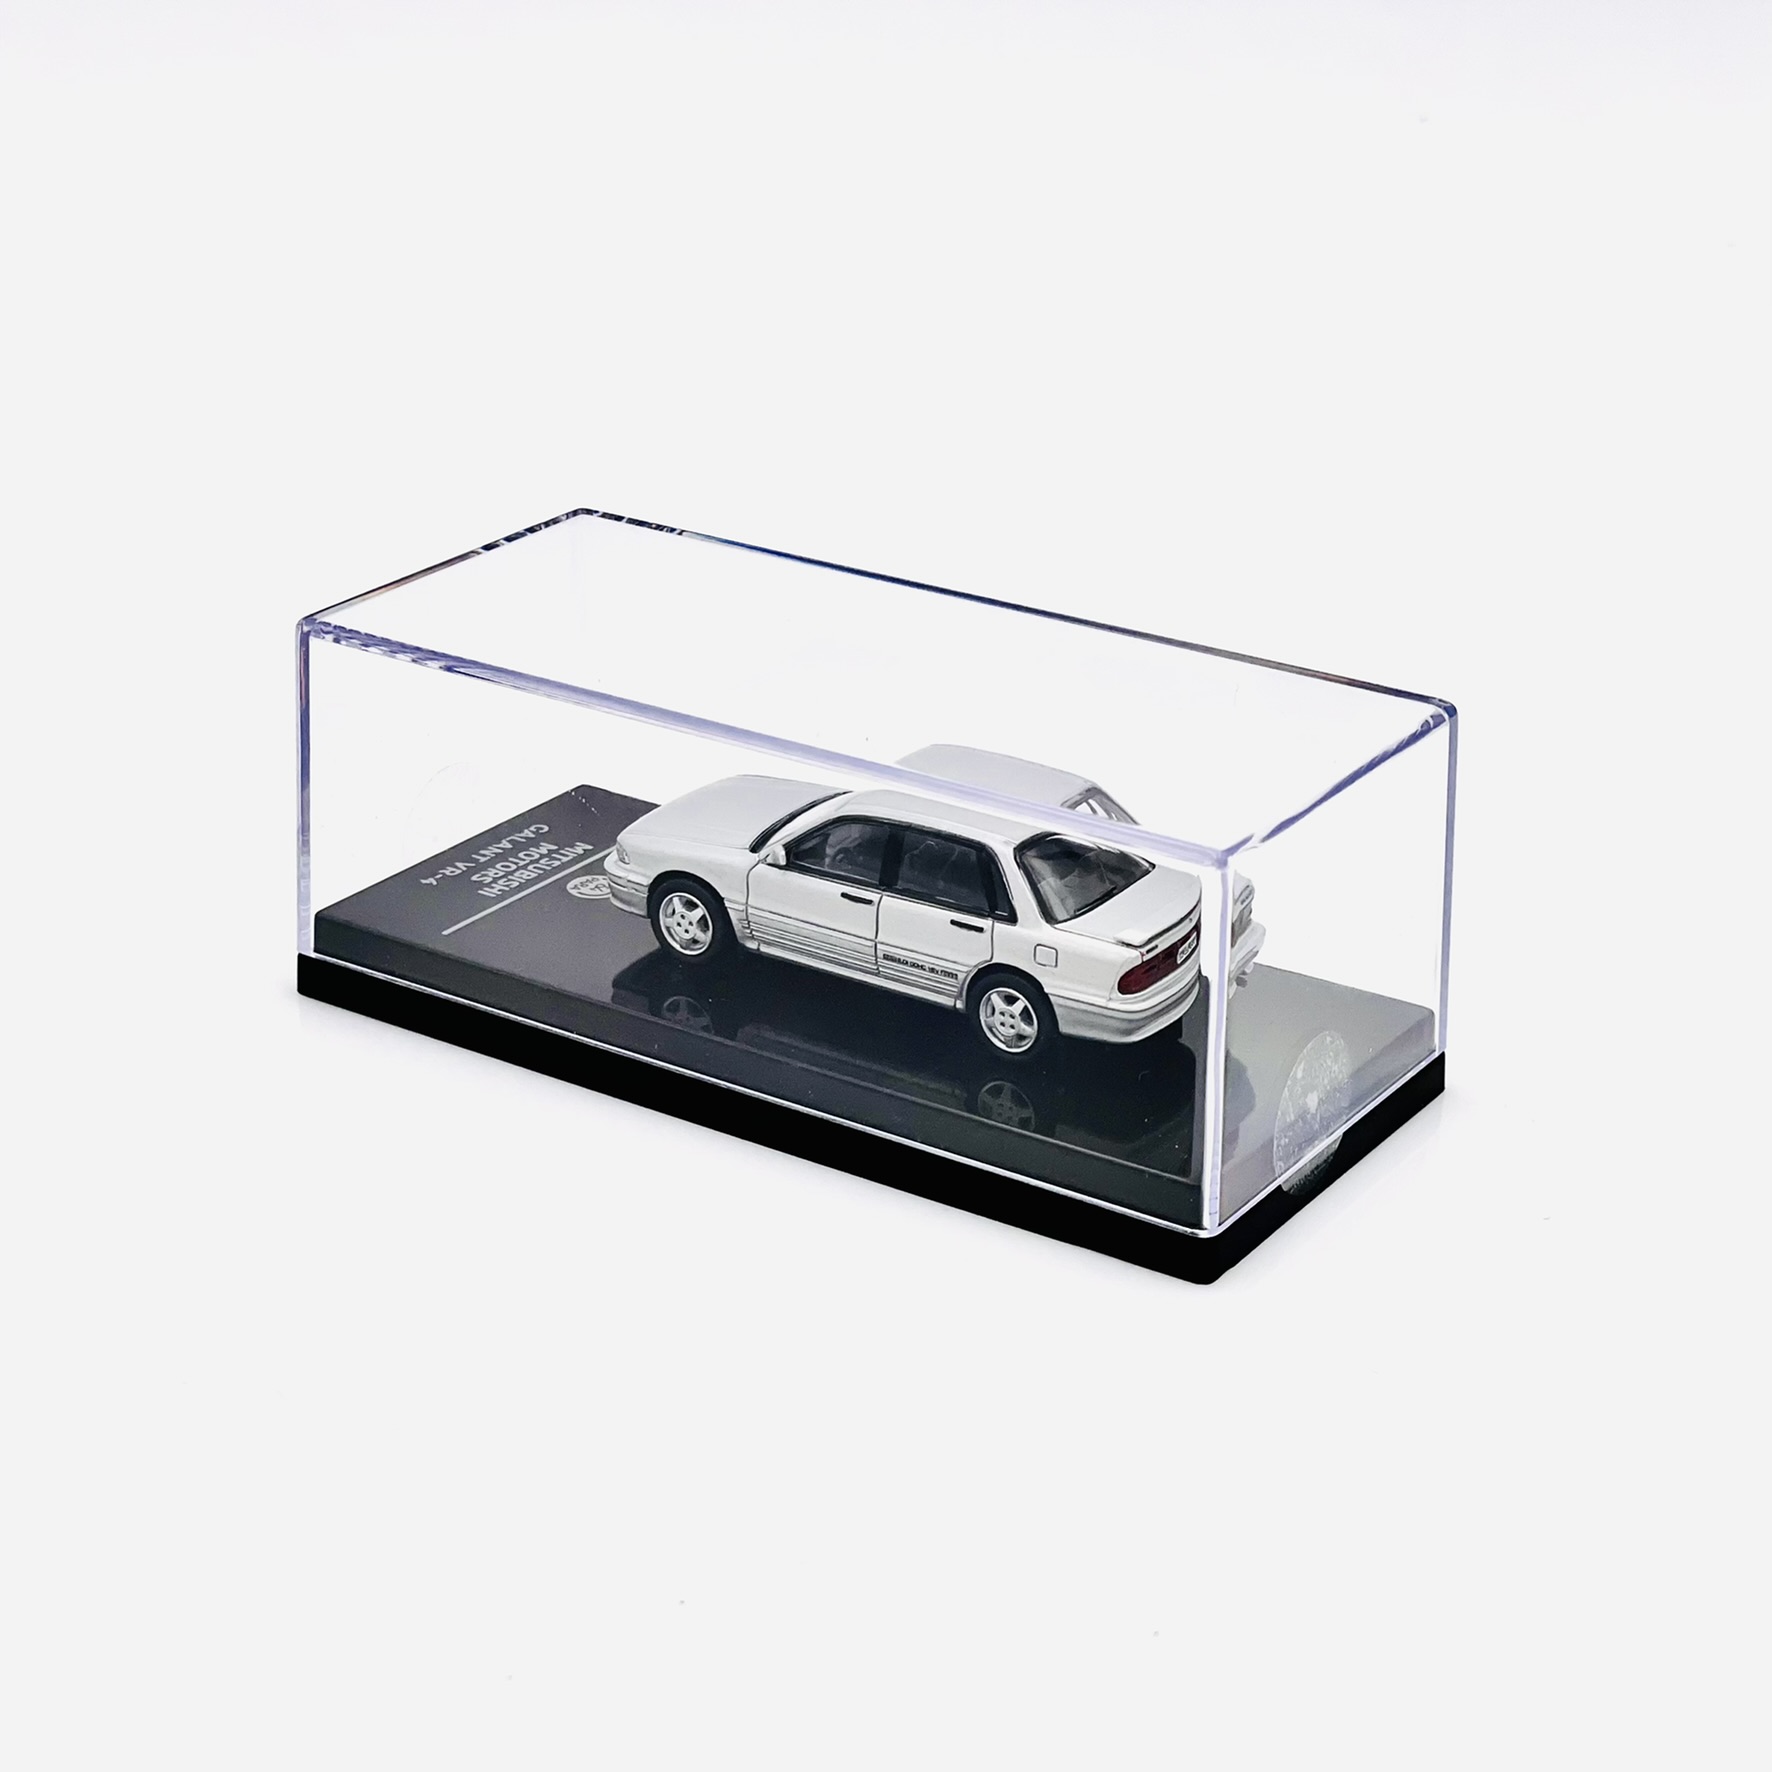 Model samochodu w skali 1:64